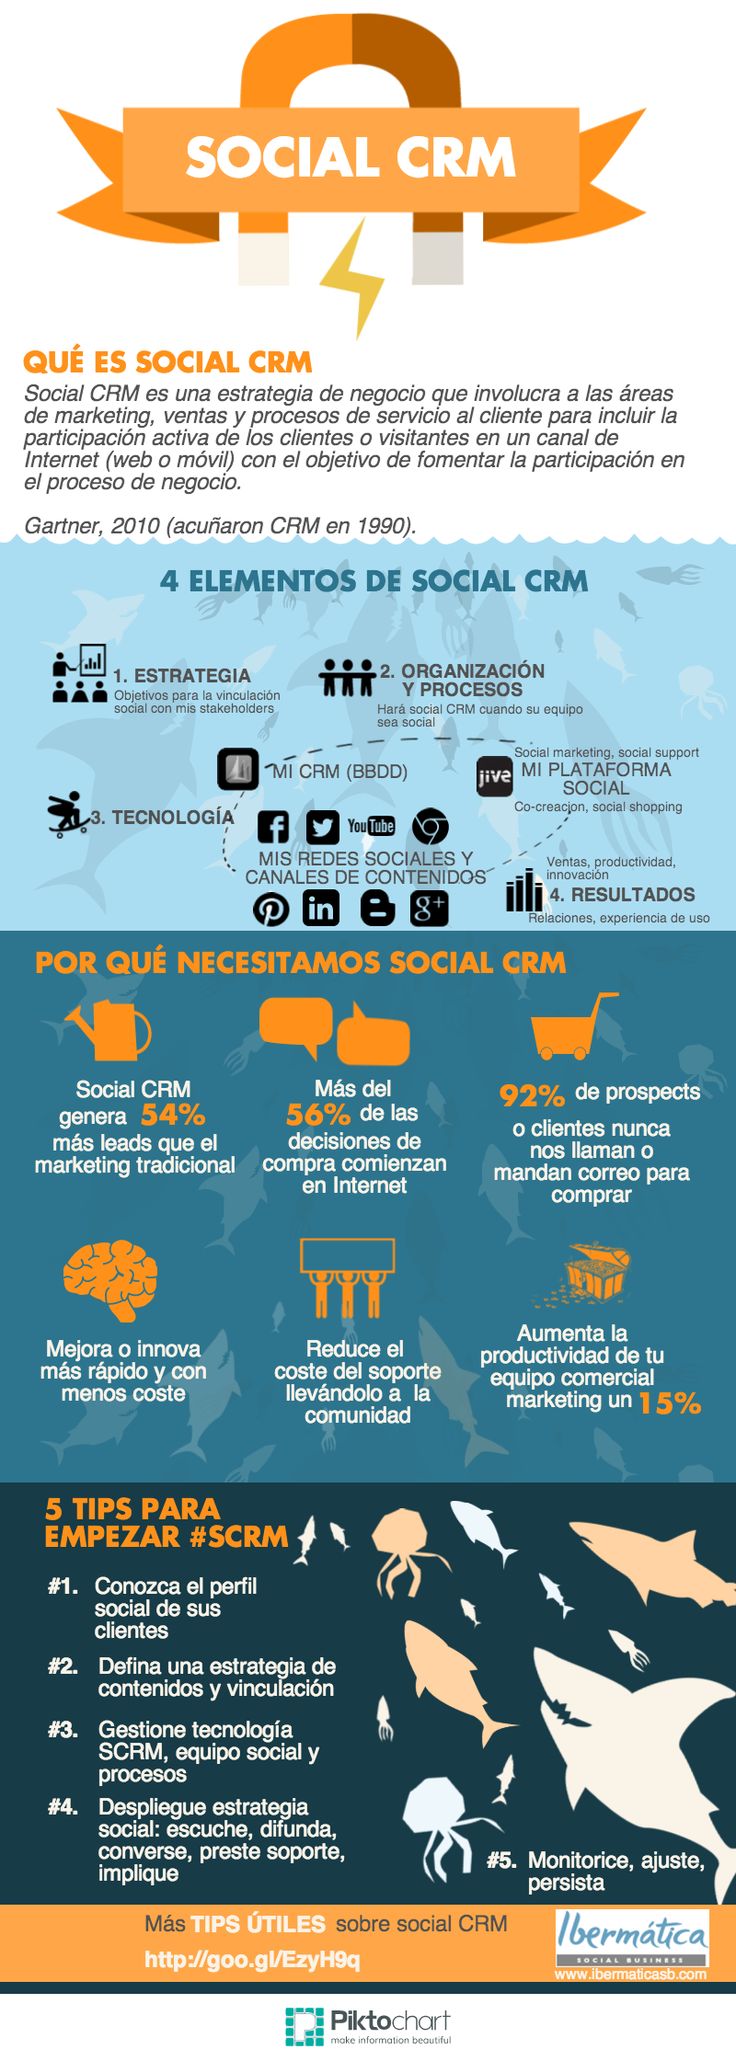 social-crm-infografia-en-espanol